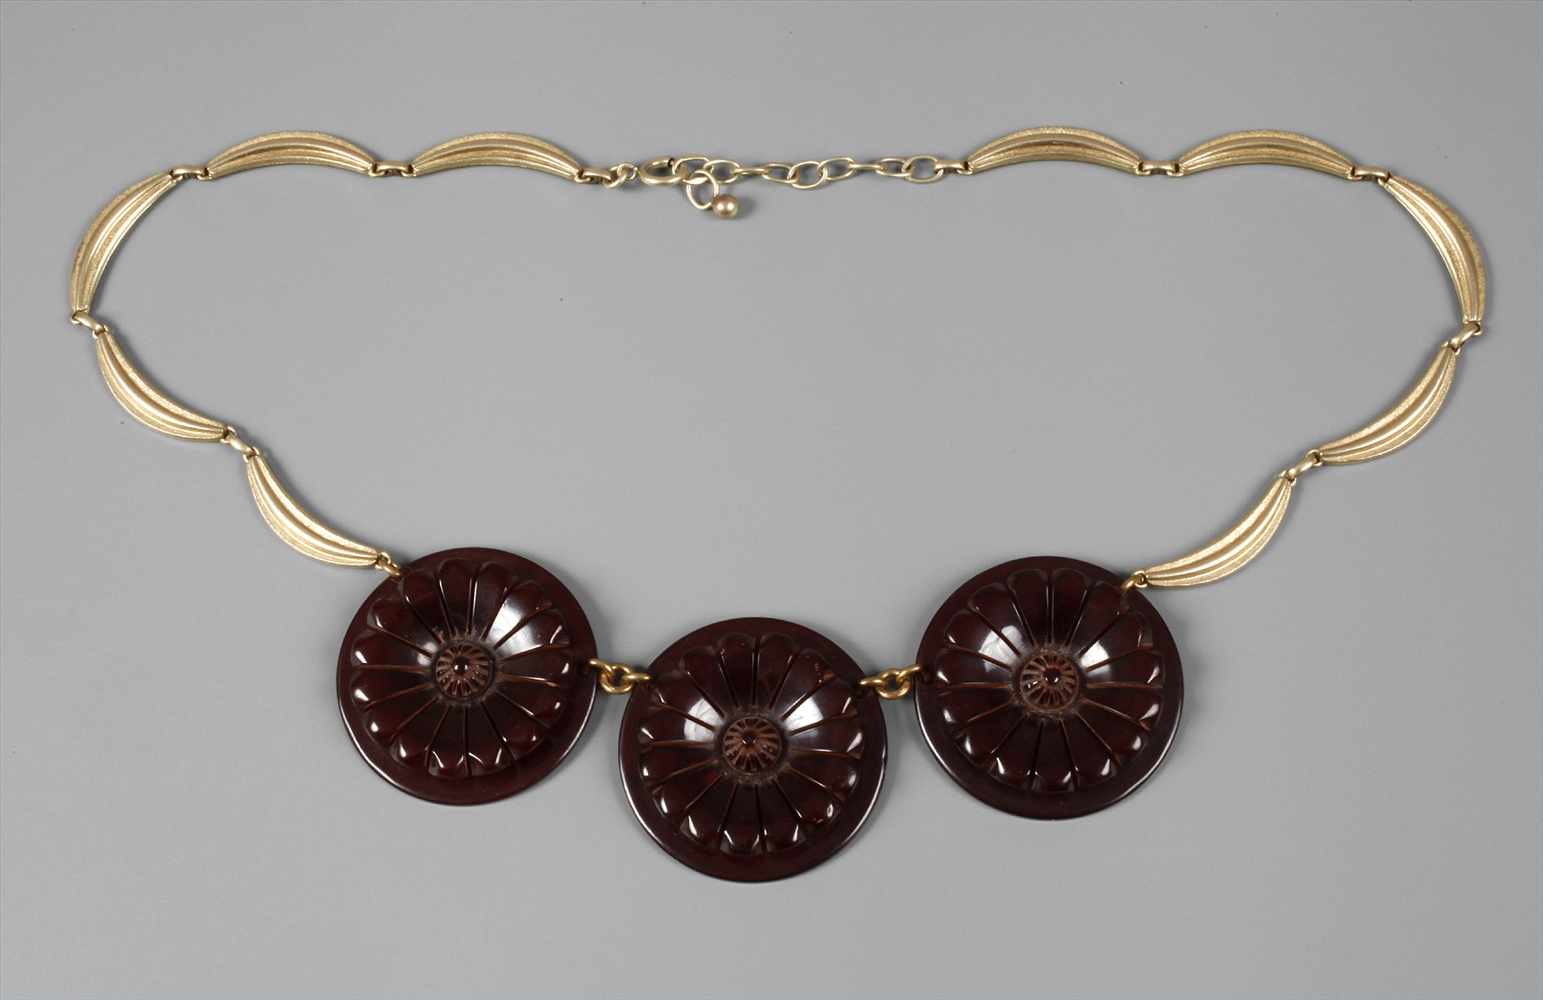 Collier Art découm 1920-30, Metall vergoldet, im Vorderteil drei Schmuckelemente aus Celluloid,